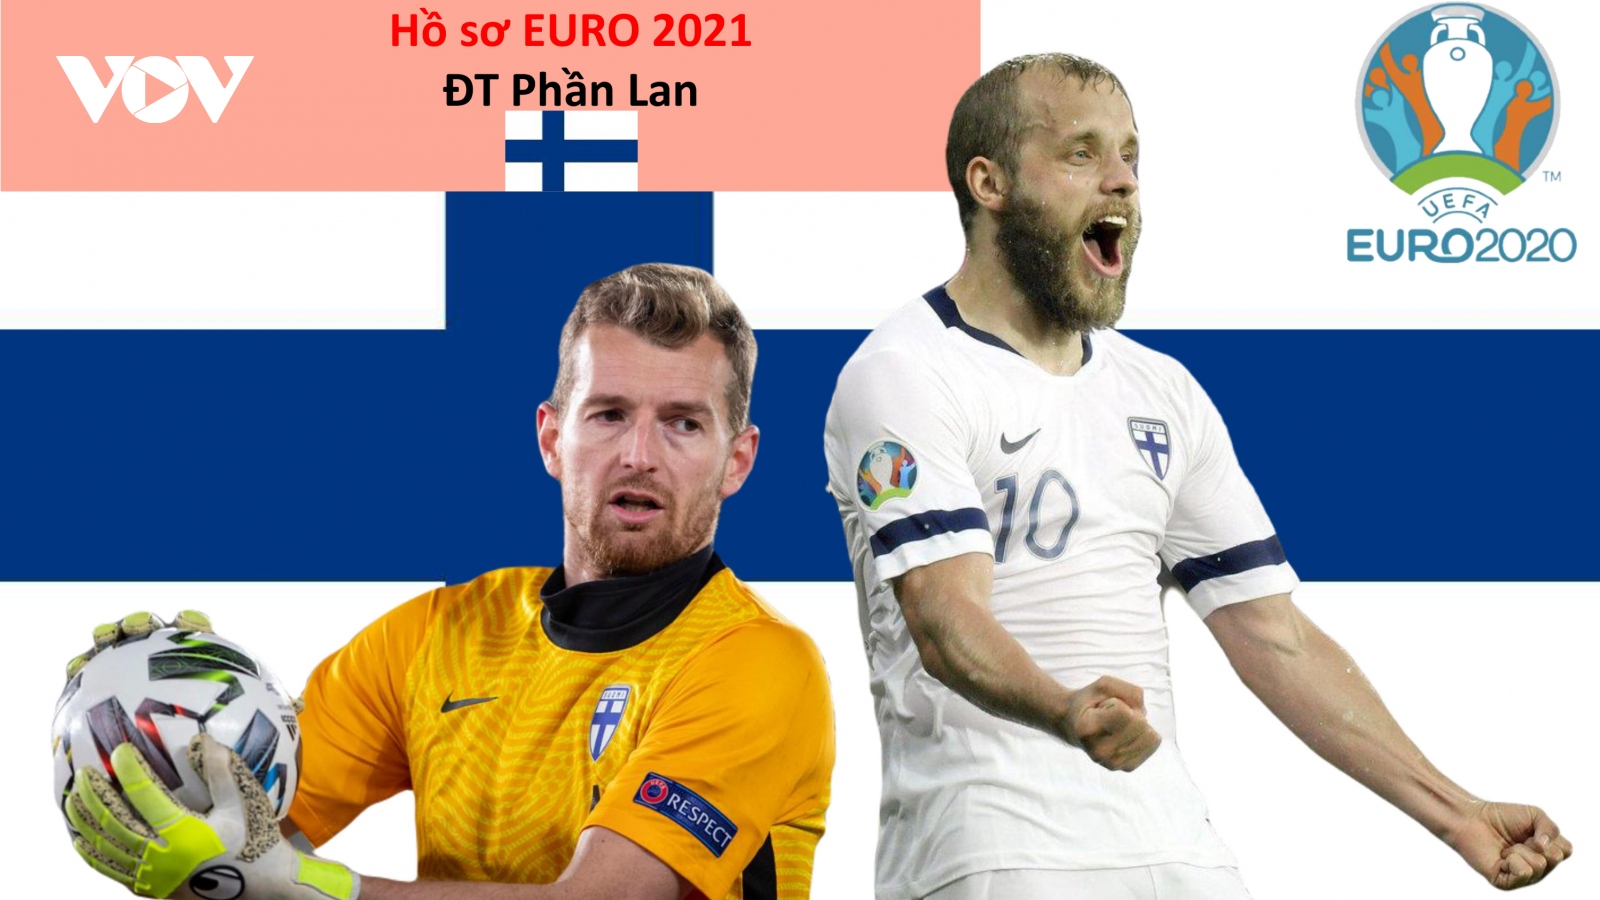 Hồ sơ các ĐT dự EURO 2021: Đội tuyển Phần Lan